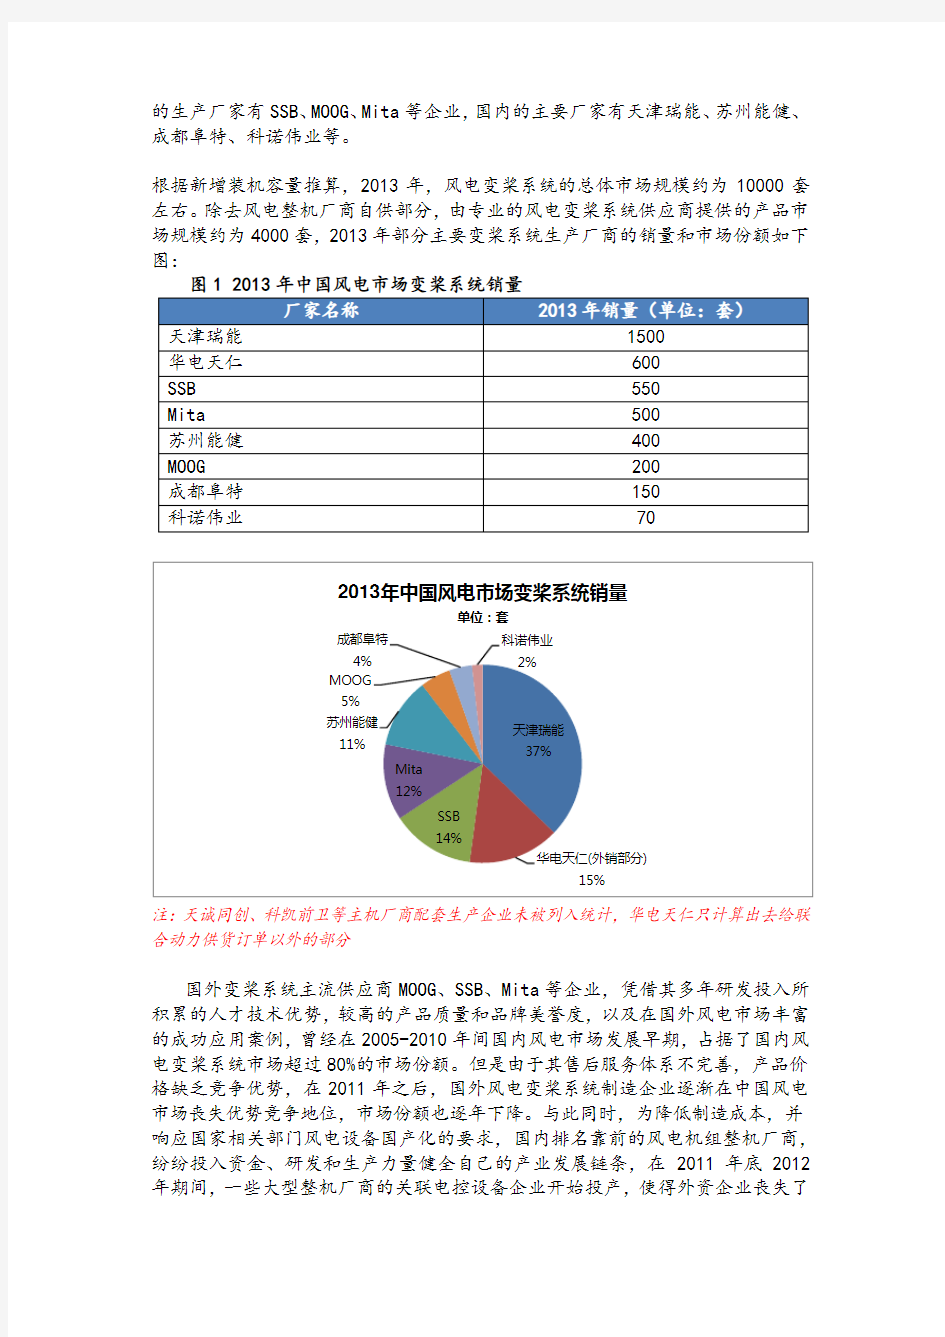 中国风电控制系统、变频器行业发展报告